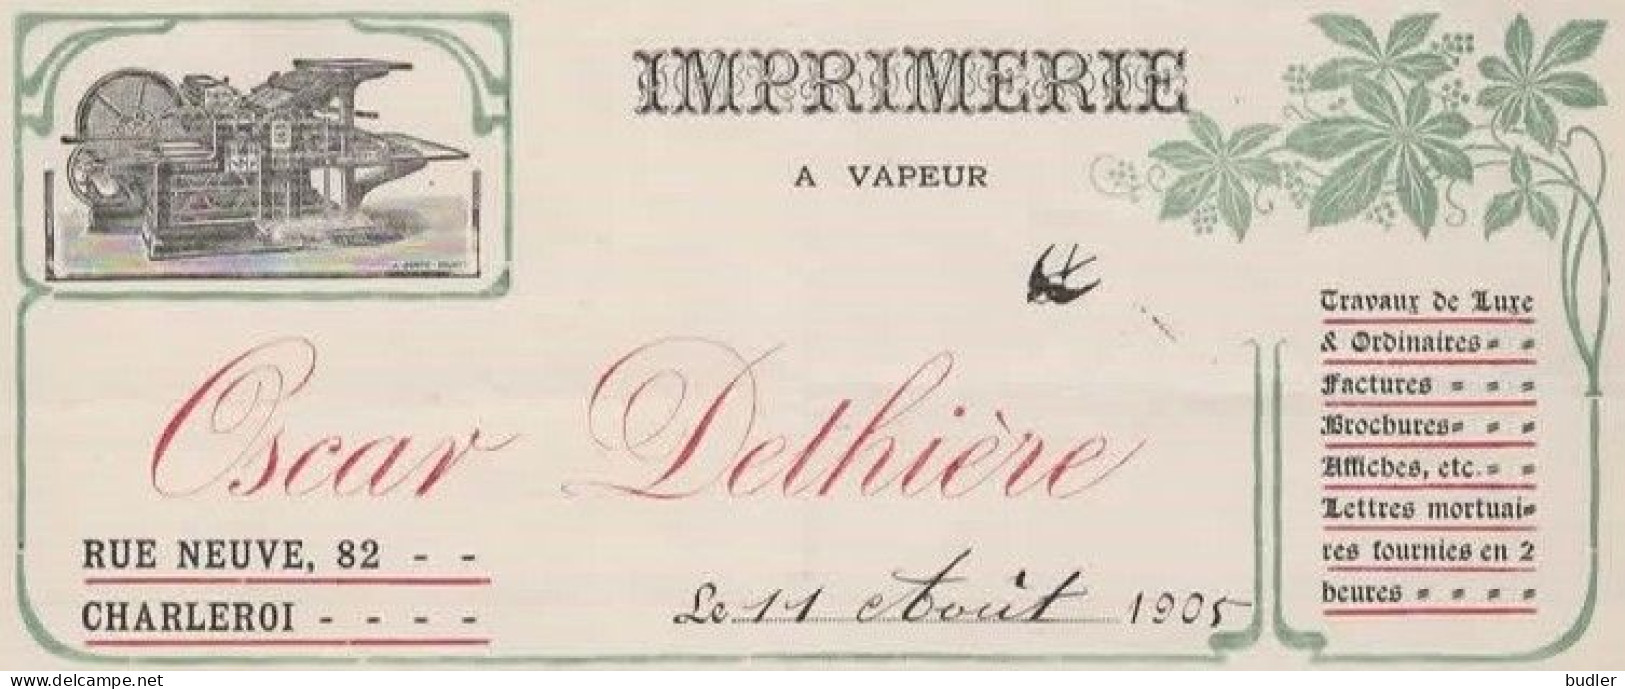 ART NOUVEAU / JUGENDSTIL 1905:Factuur Van/Facture De  ##Imprimerie à Vapeur OSCAR DETHIÈRE, Rue Neuve, 82, CHARLEROI##. - Drukkerij & Papieren